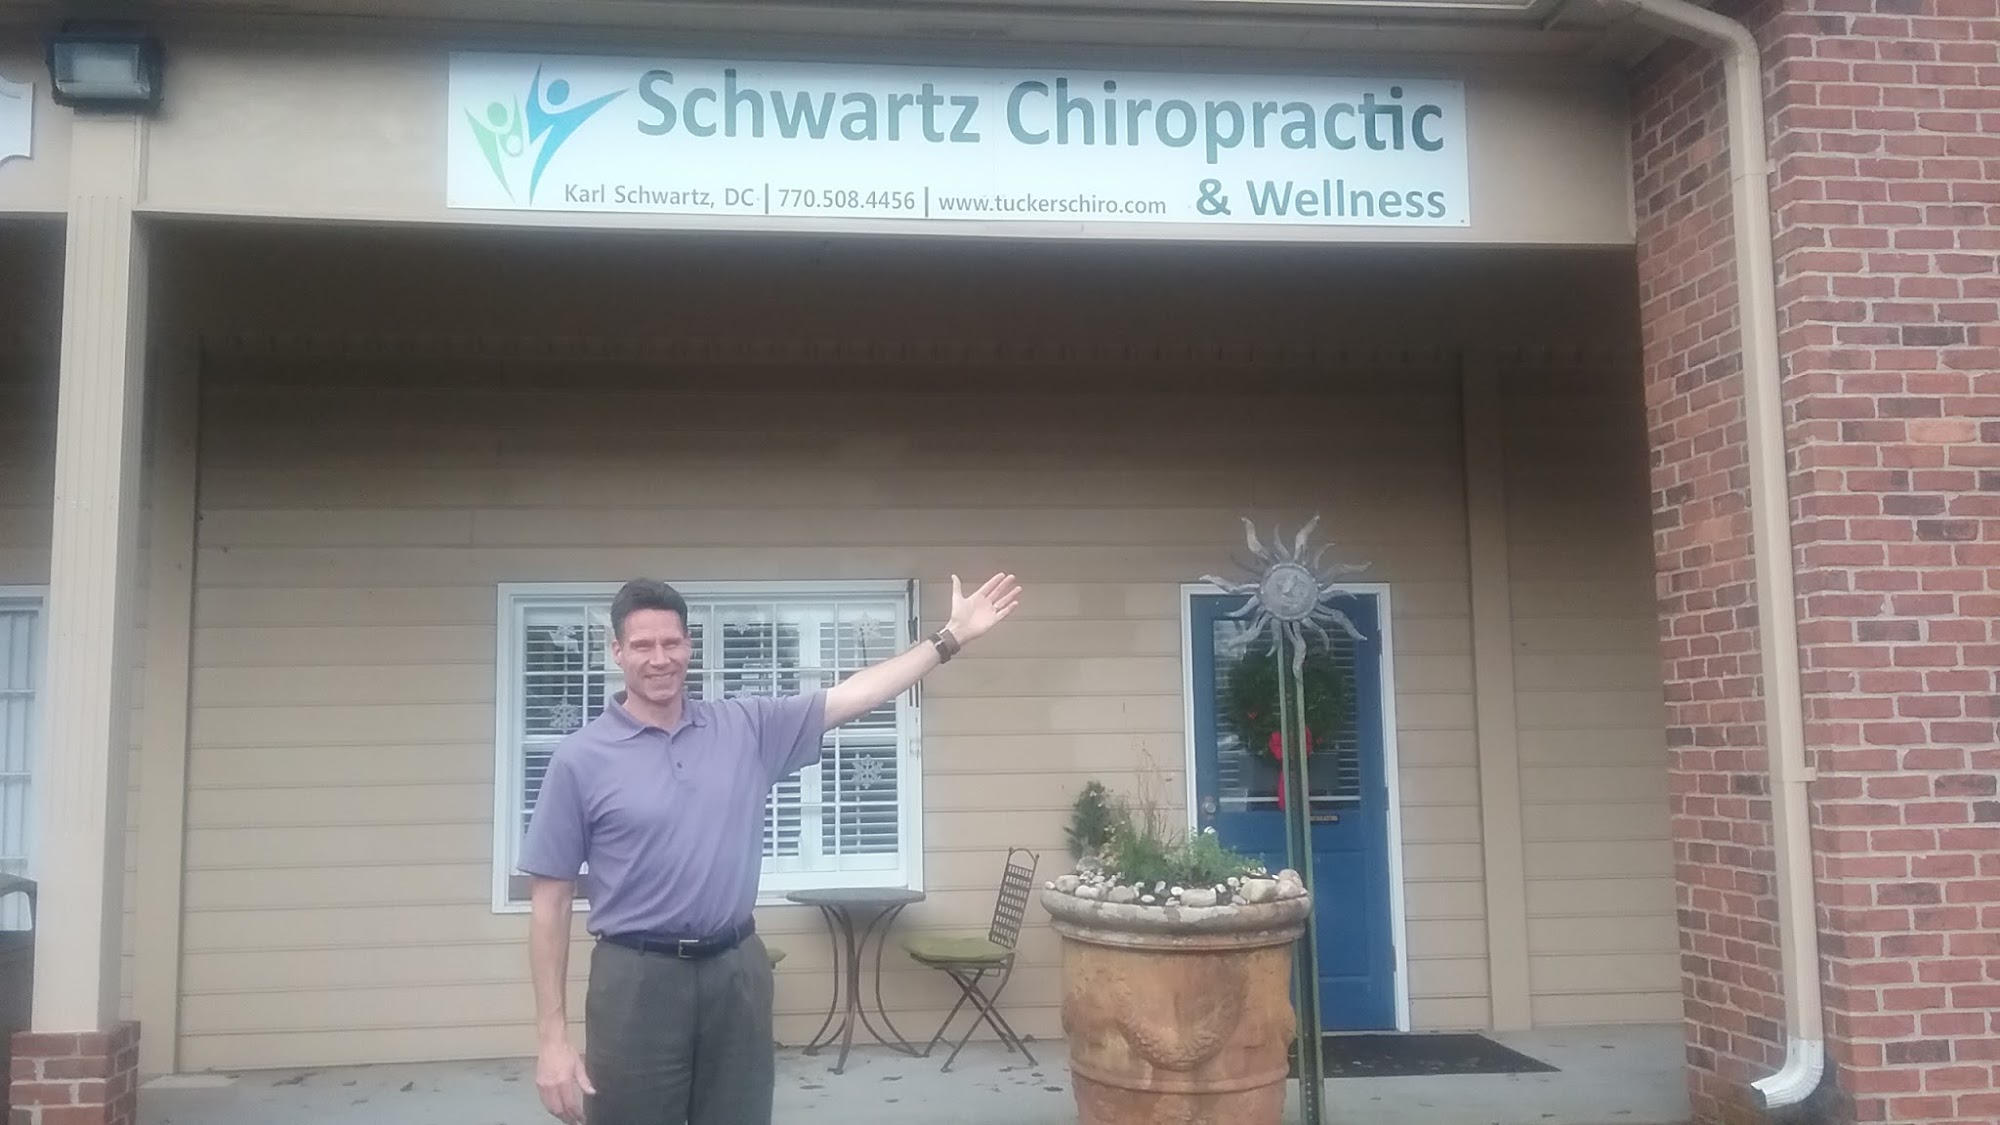 Schwartz Chiropractic and Wellness